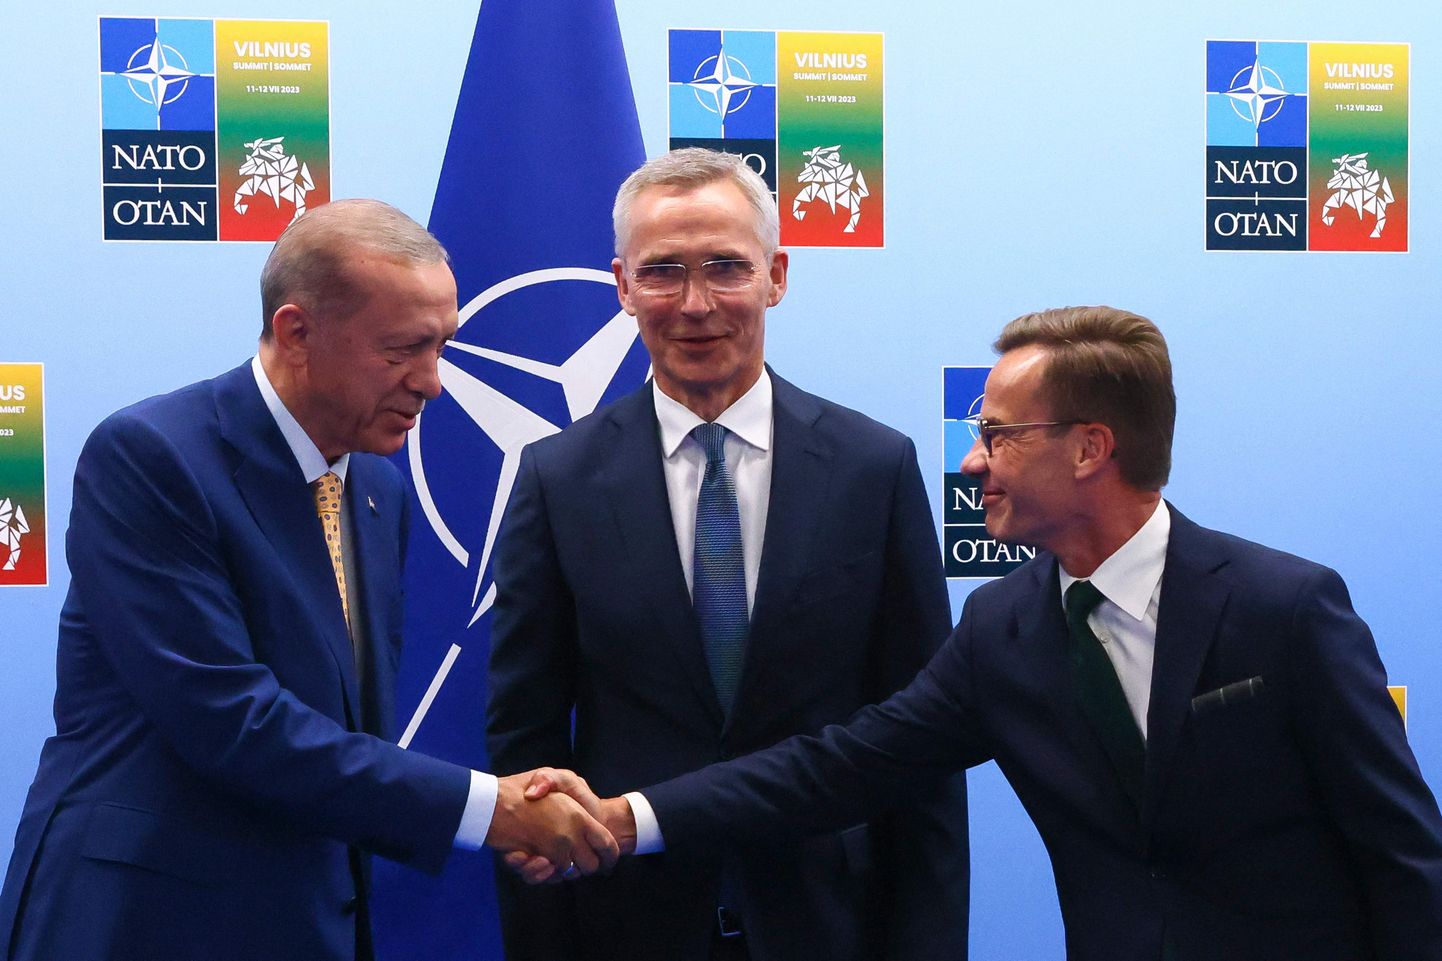 Президент Турции Реджеп Тайип Эрдоган (слева) на саммите НАТО в Вильнюсе летом с премьер-министром Швеции Ульфом Кристерссоном (справа) и генеральным секретарем НАТО Йенсом Столтенбергом.